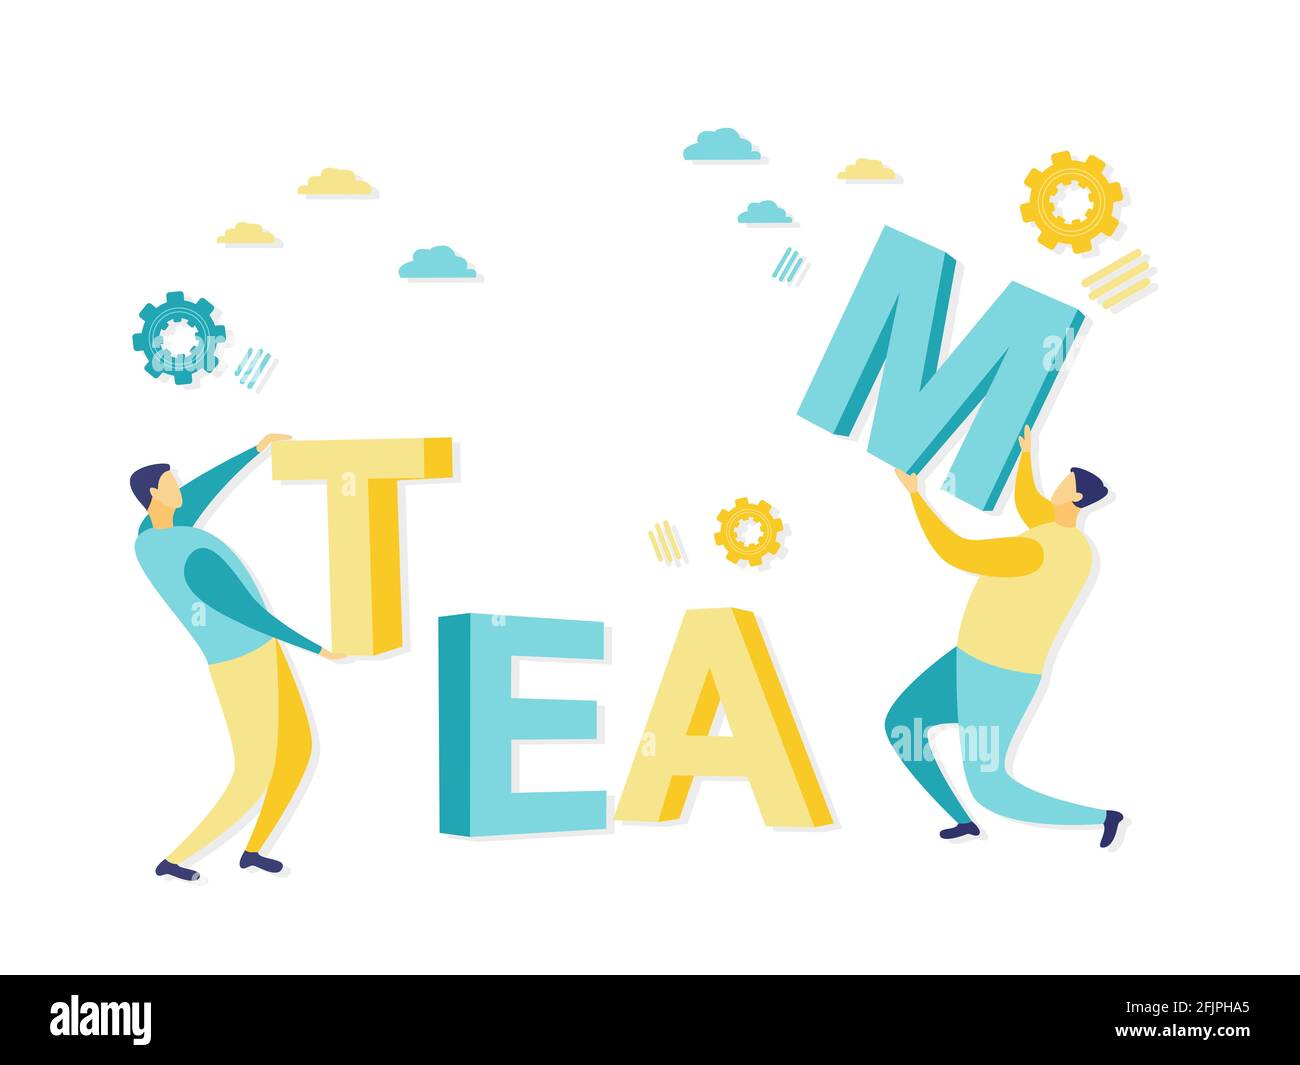 Flache Illustration von Teamwork-Konzept mit Geschäftsmann Putting Briefe. Einfache Darstellung in blauer und gelber Farbe. Geschäfts- und Finanzkonzepte. Stock Vektor